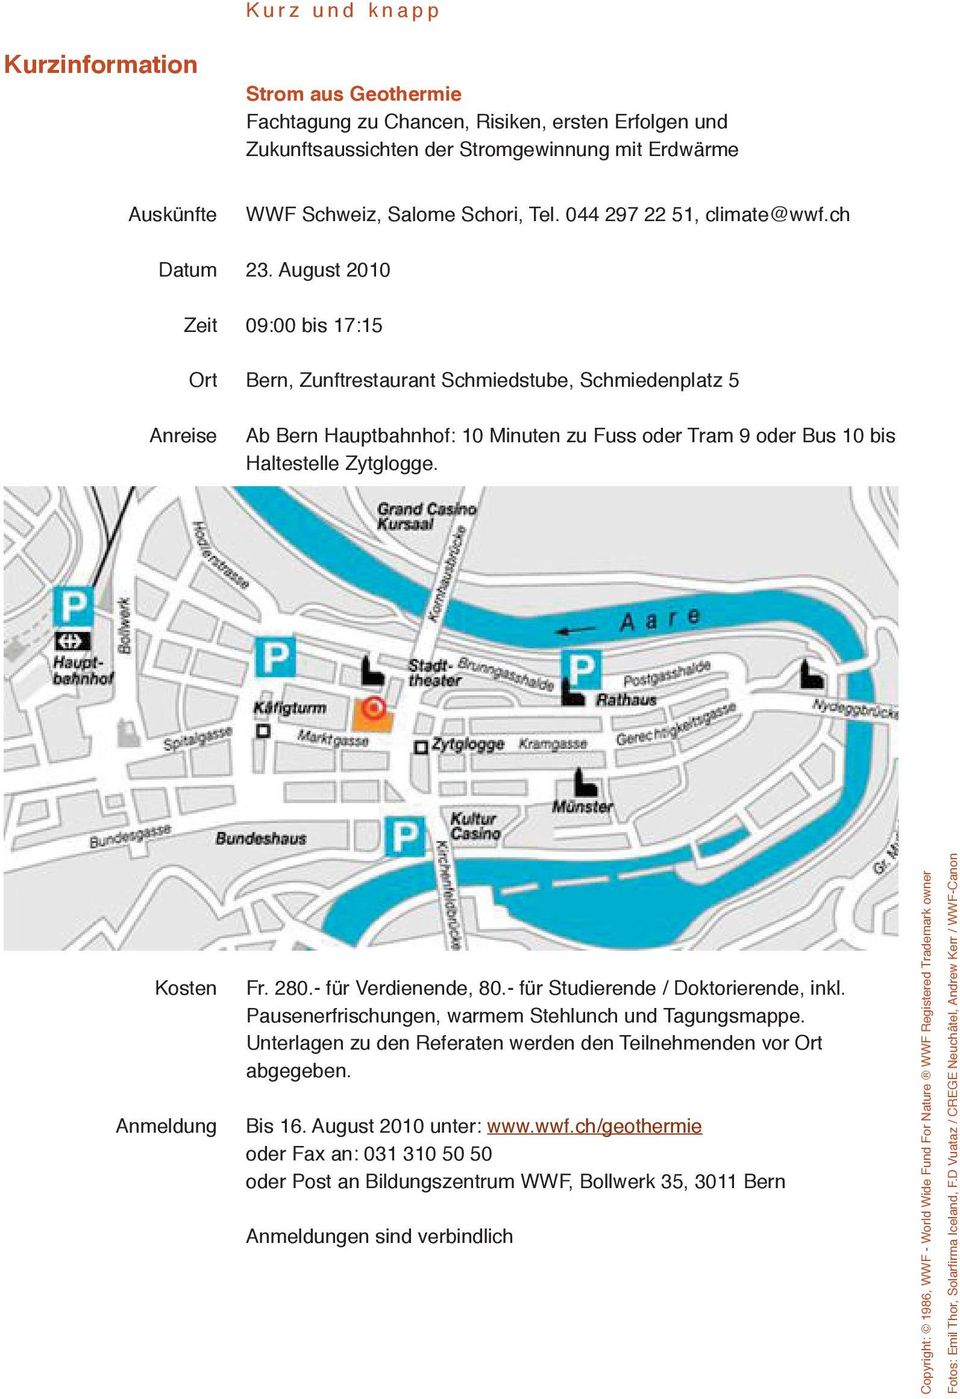 August 2010 Zeit 09:00 bis 17:15 Ort Bern, Zunftrestaurant Schmiedstube, Schmiedenplatz 5 Anreise Ab Bern Hauptbahnhof: 10 Minuten zu Fuss oder Tram 9 oder Bus 10 bis Haltestelle Zytglogge.